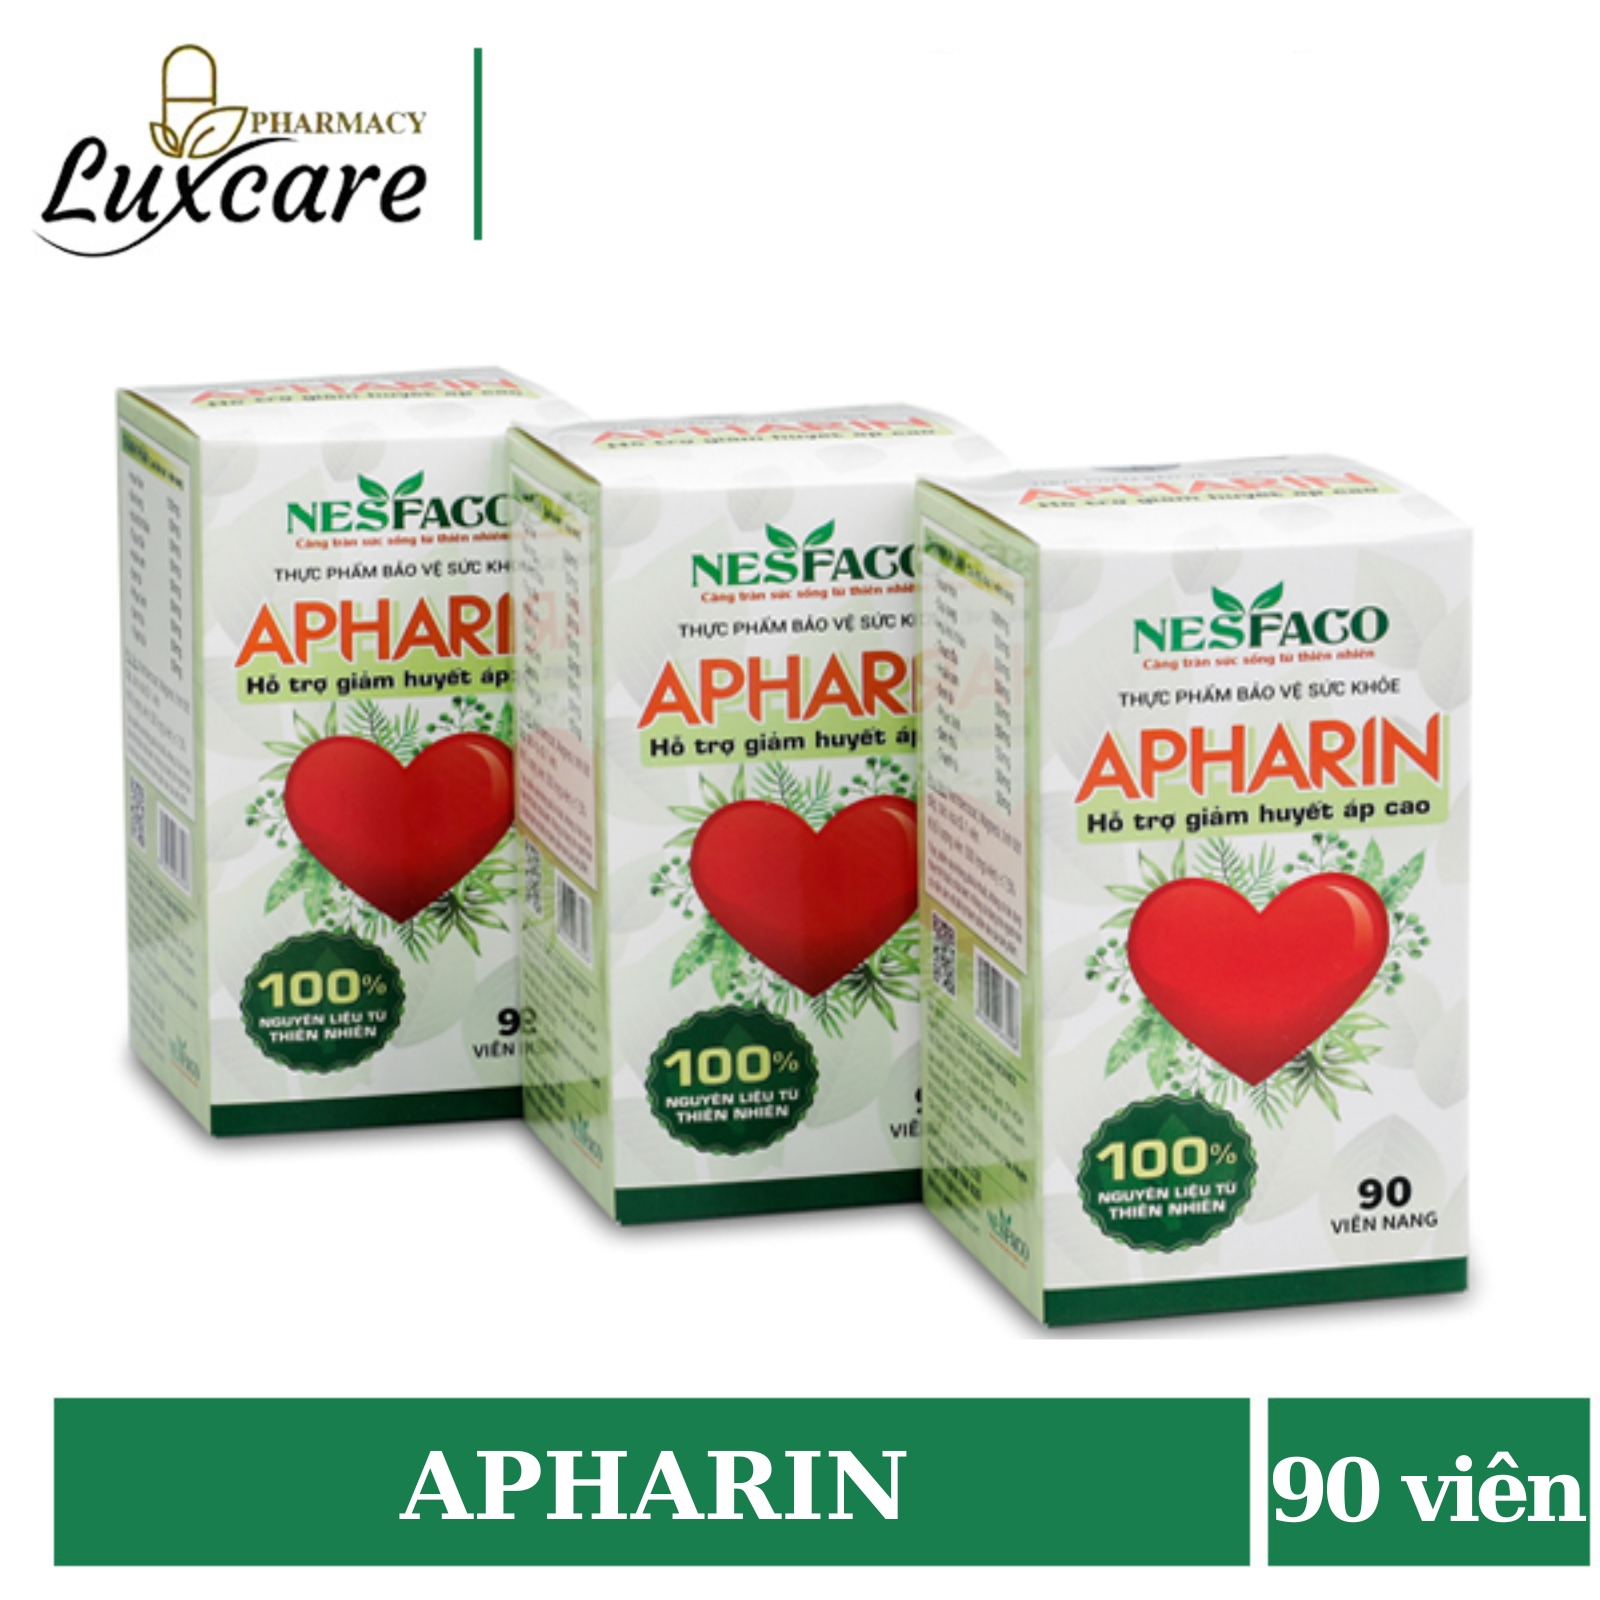 Apharin giúp hỗ trợ giảm huyết áp cao hộp 90 viên - Luxcare Pharmacy